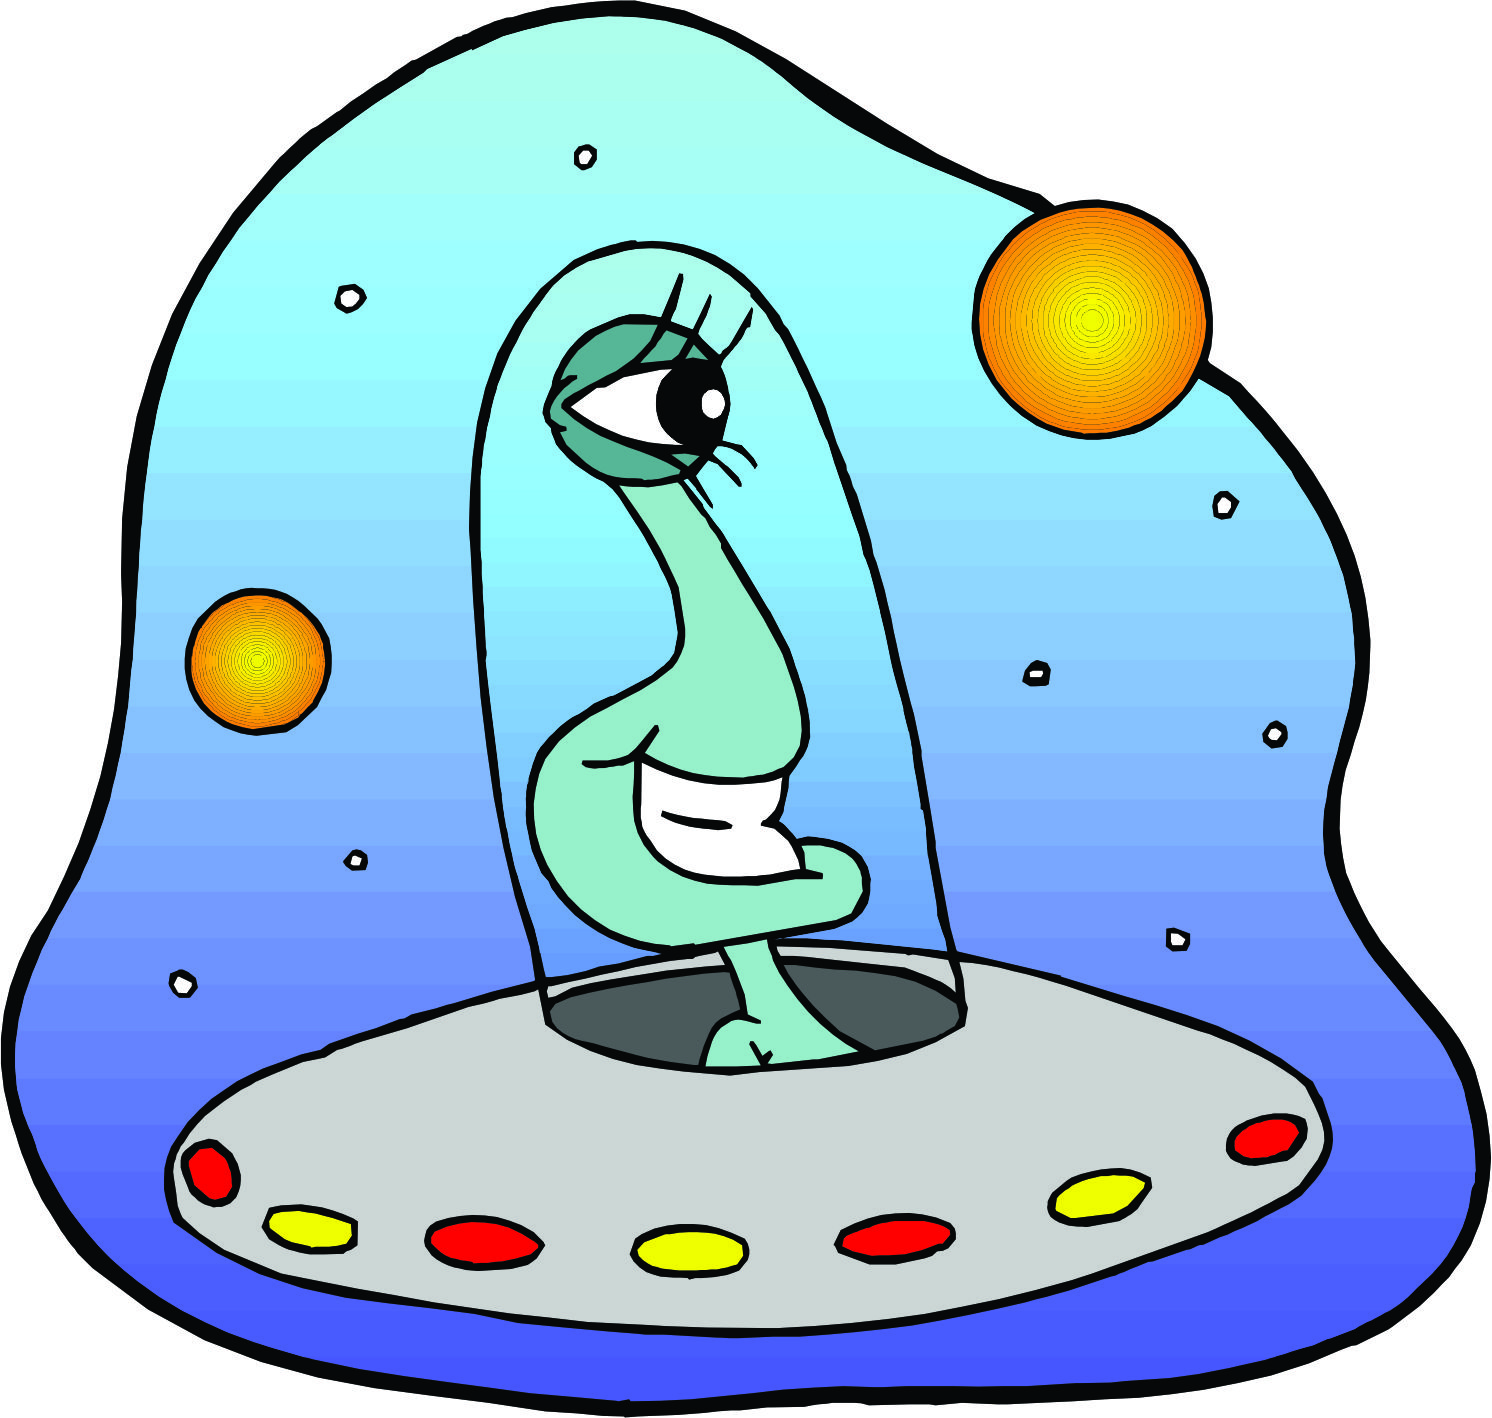 Alien Spaceship Cartoon - ClipArt Best